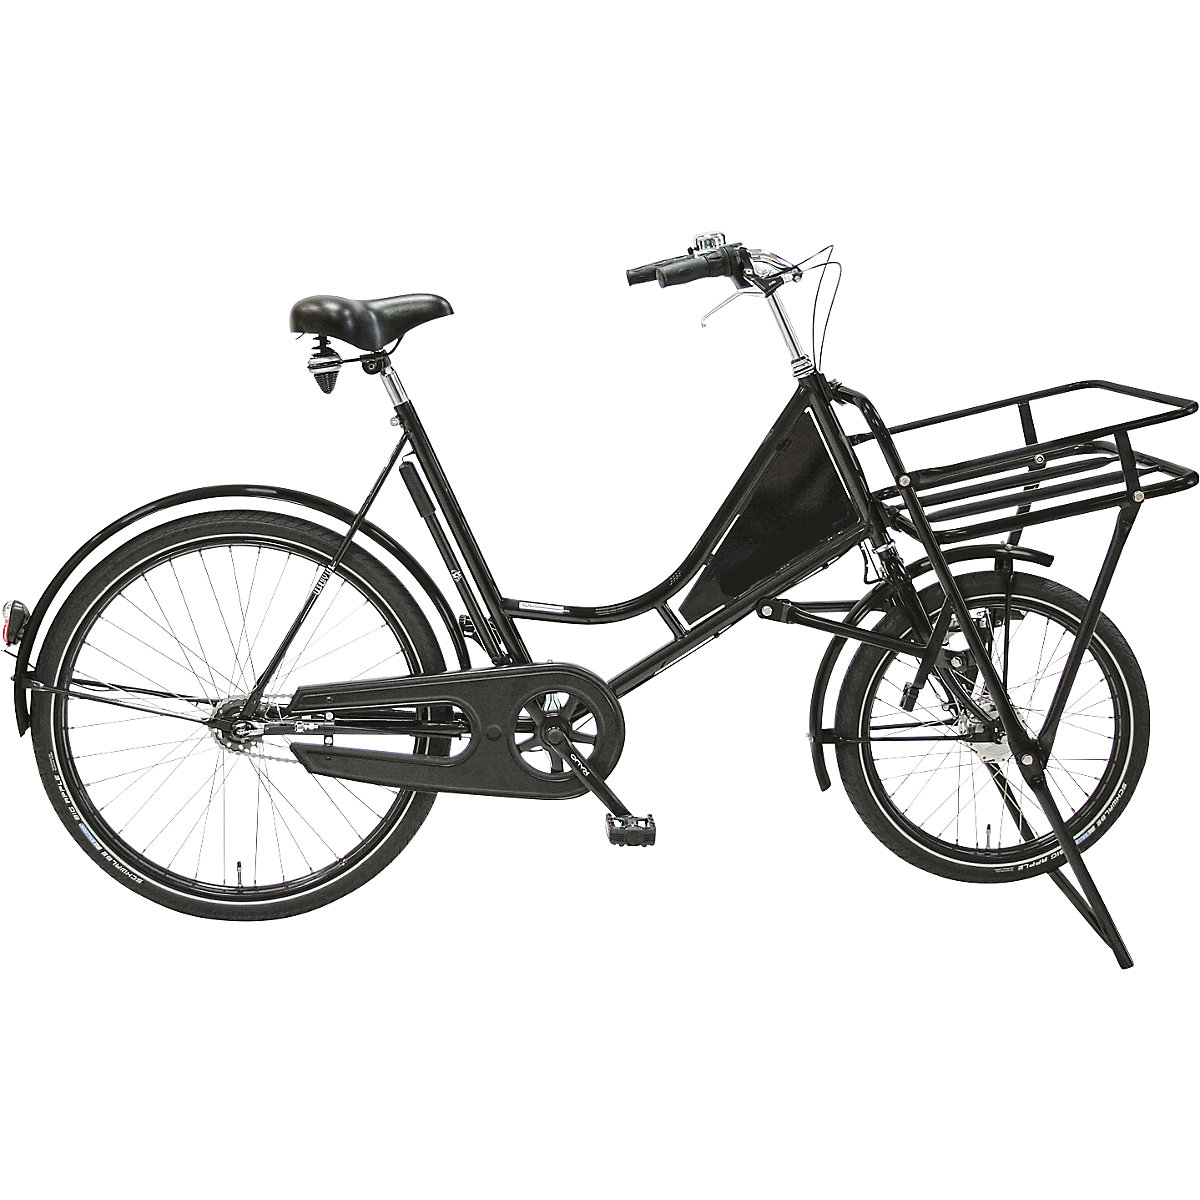 Nákladní jízdní kolo CLASSIC, jízdní kolo pro vnitropodnikovou přepravu, nosnost 150 kg, od 5 ks-3